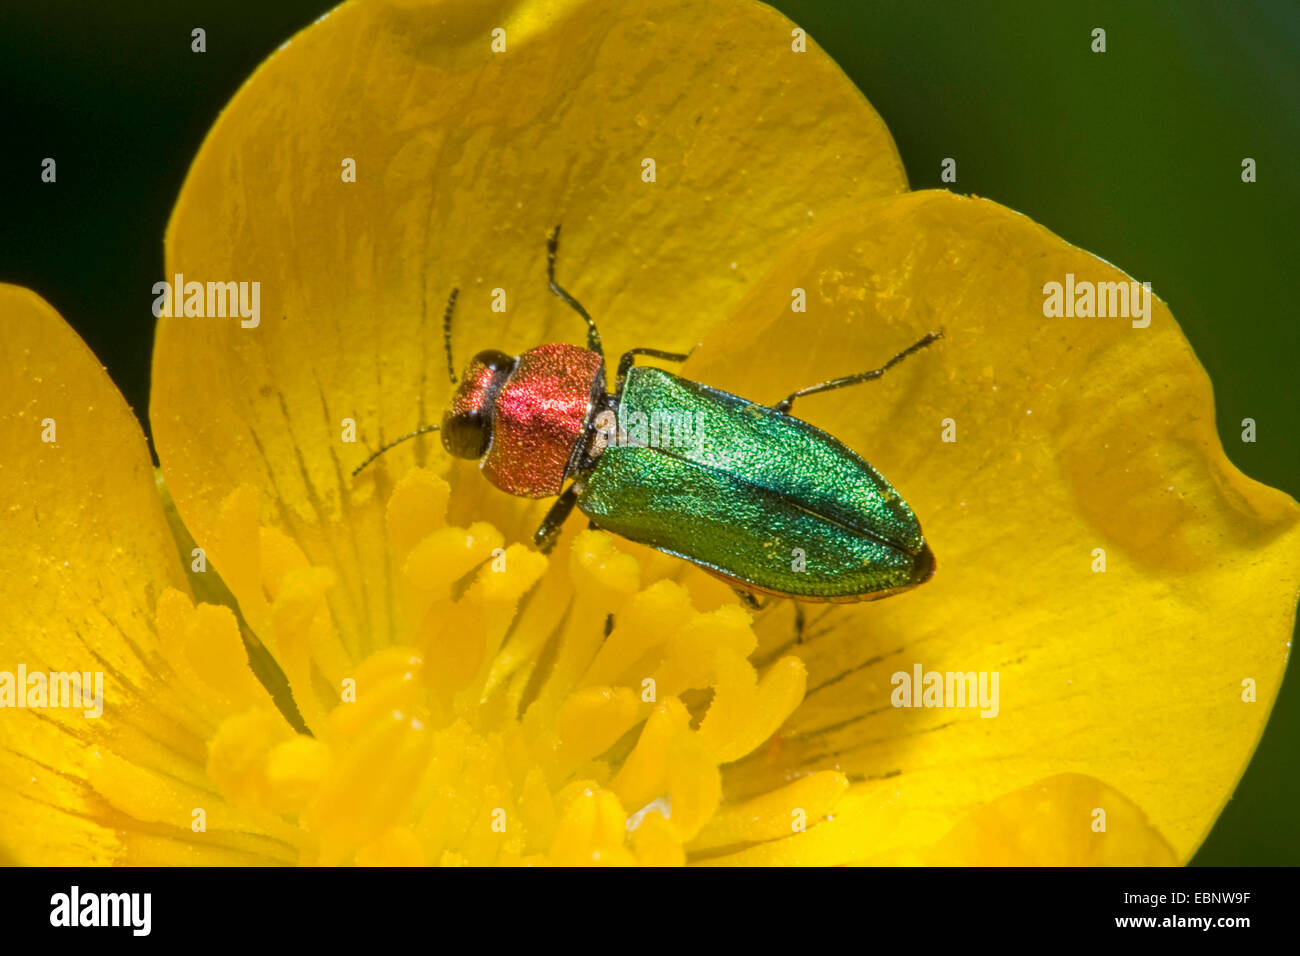 Jewel beetle, coléoptère bois métallique (Anthaxia nitidula), sur une fleur jaune, Allemagne Banque D'Images